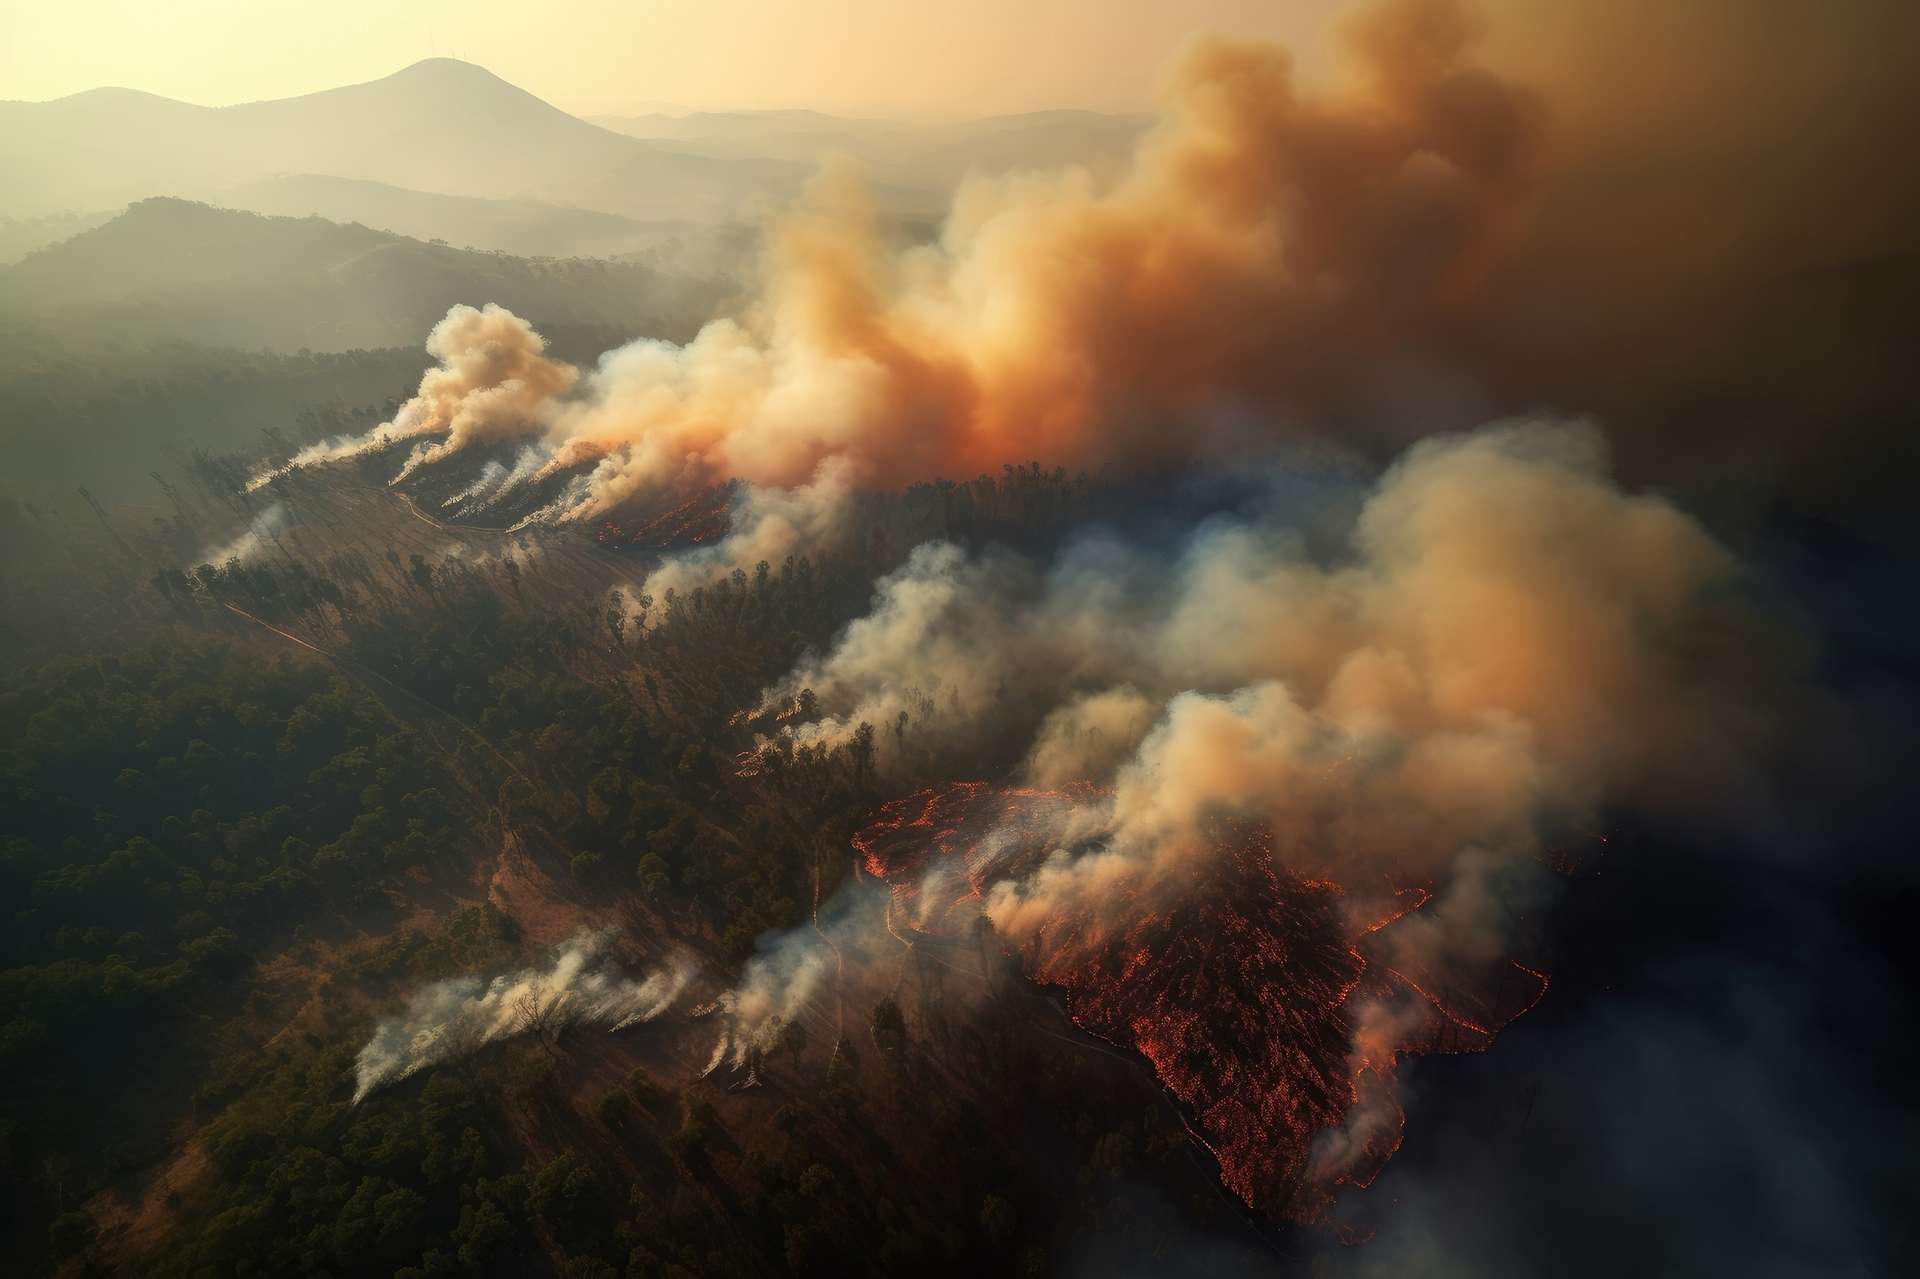 Les 10 millions d'hectares de forêt brûlés au Canada provoquent un nuage de fumée aux dimensions records